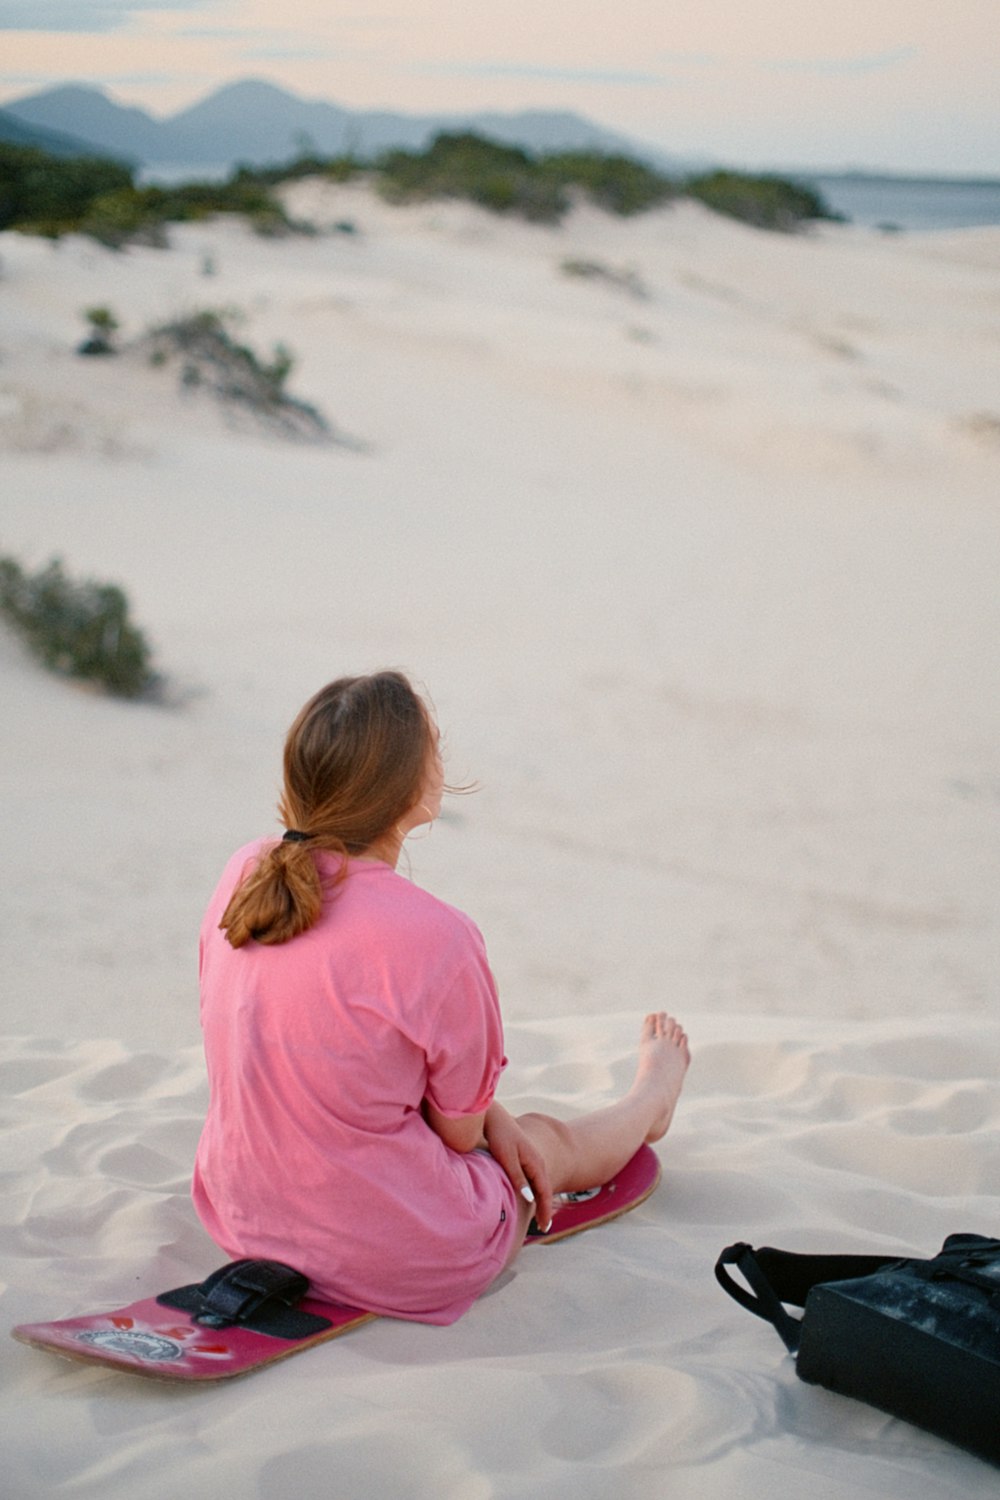 스노우 보드와 함께 모래에 앉아있는 여자